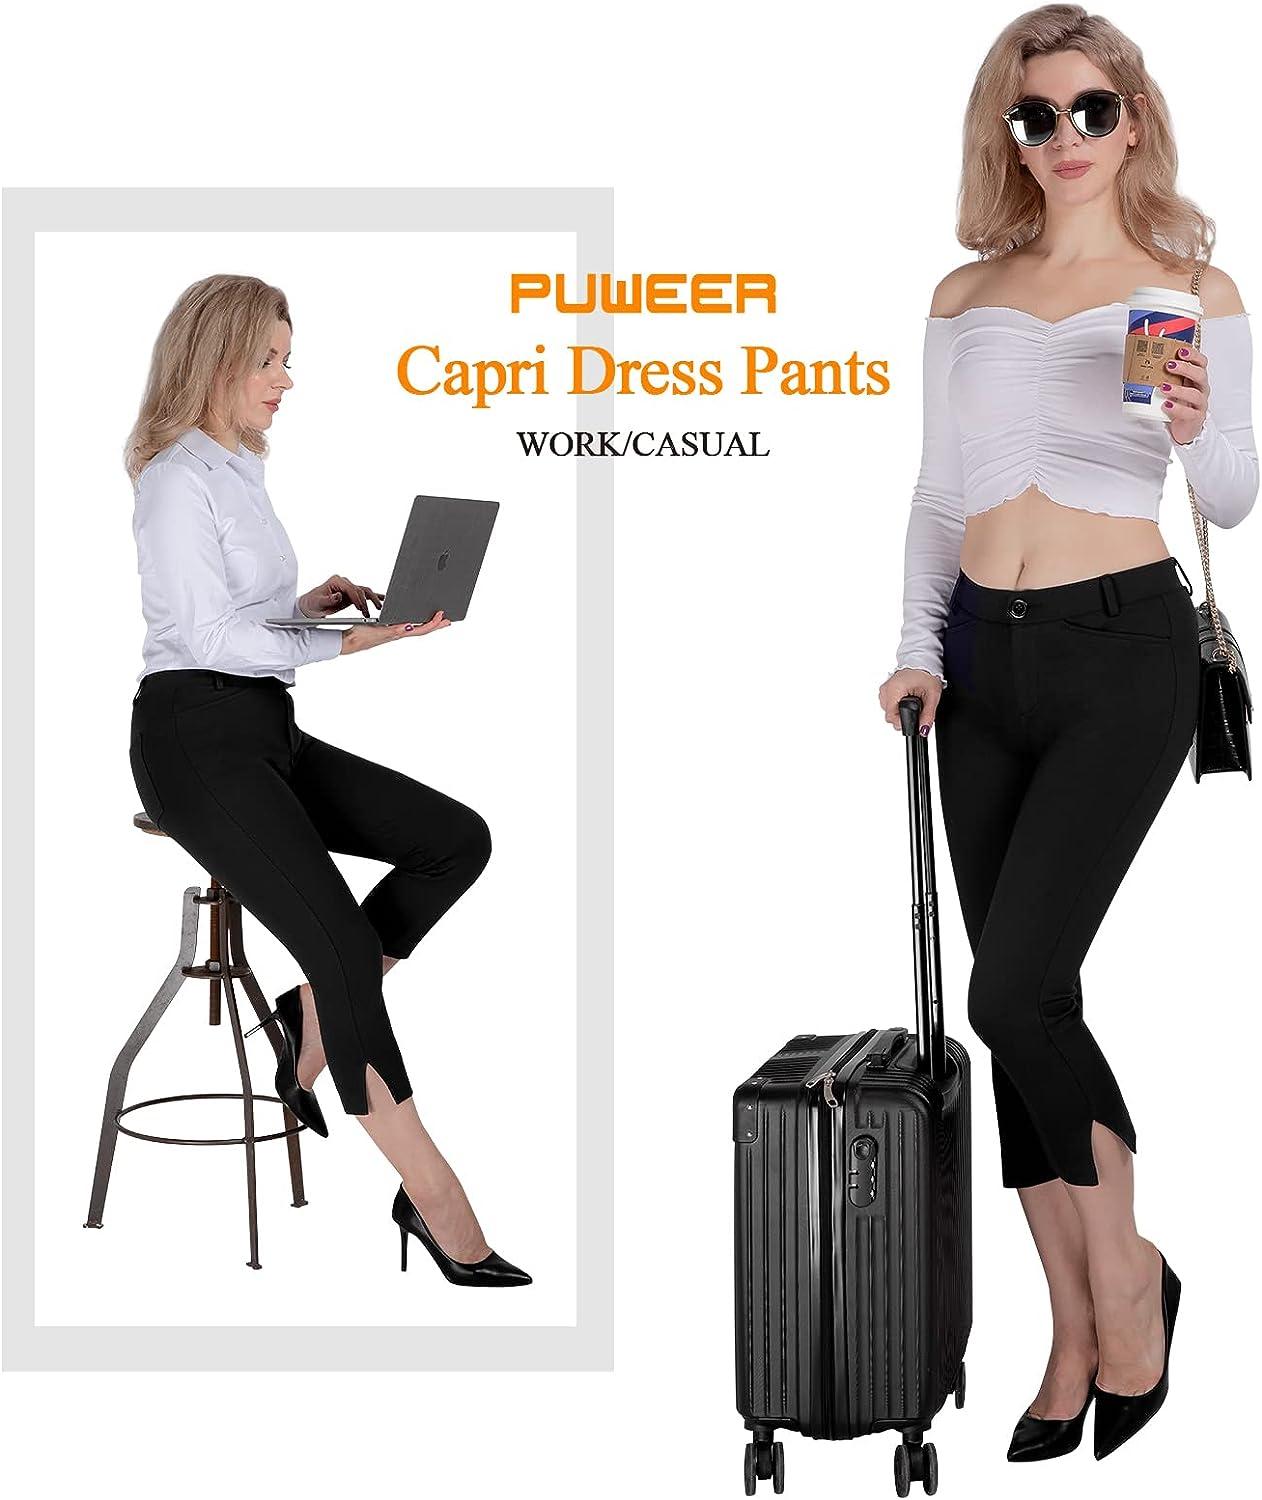 capri dress pants